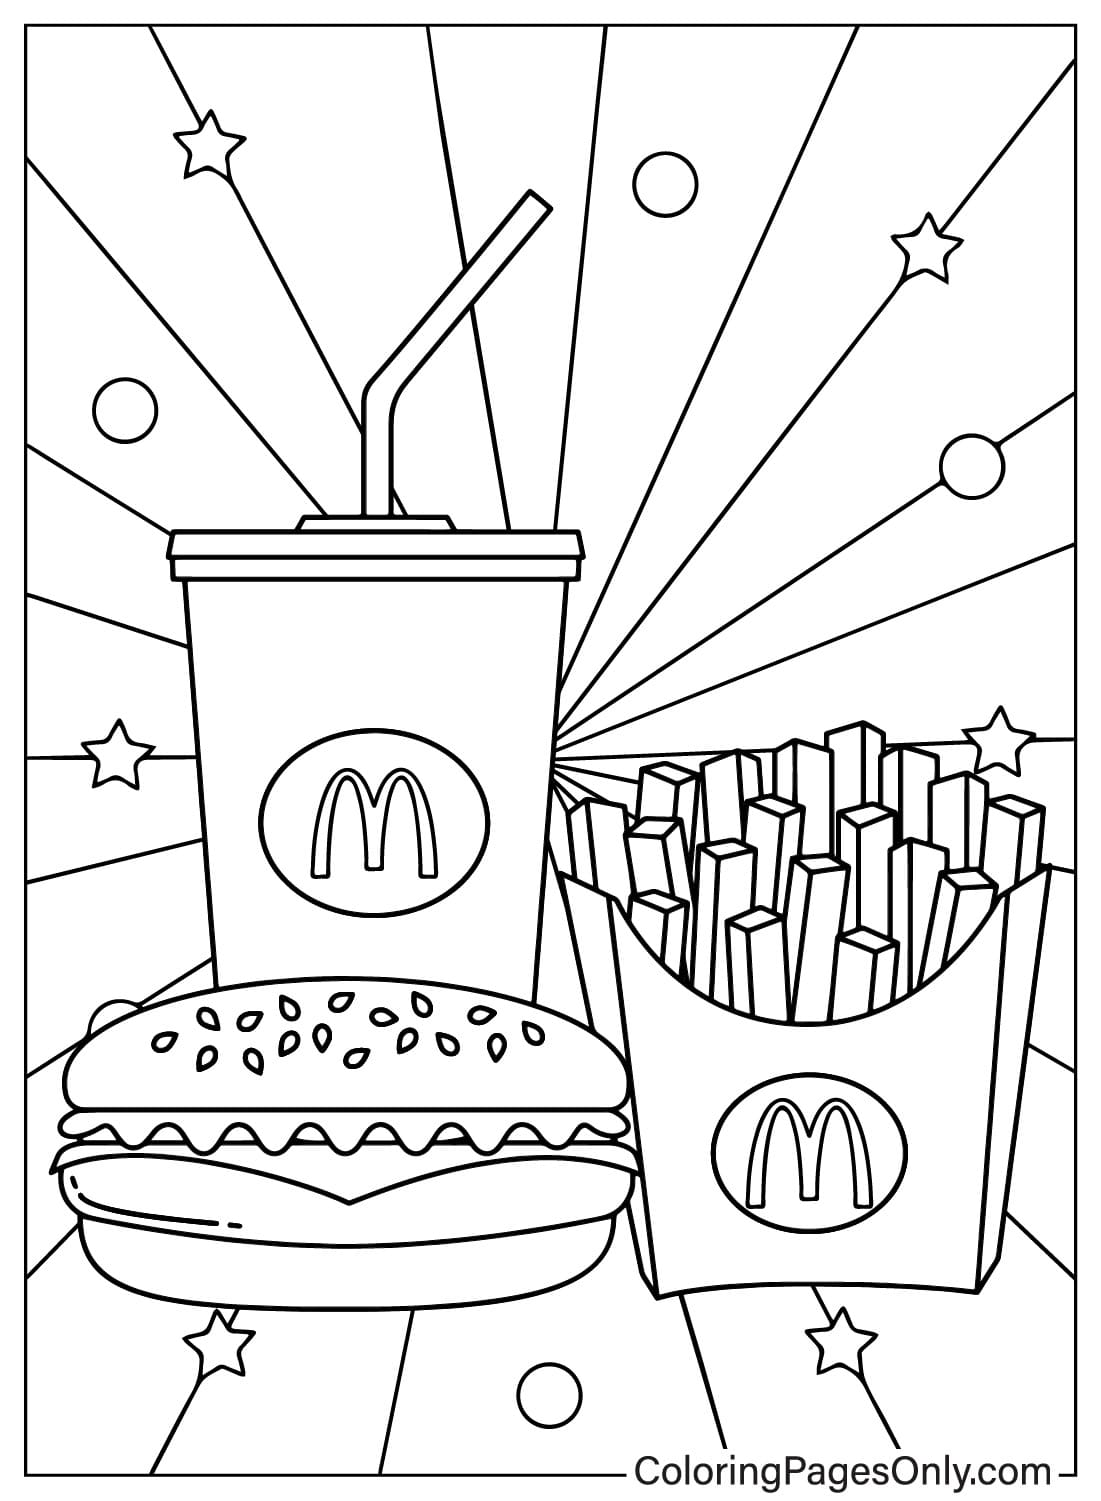 Раскраска с изображениями Макдональдса из Макдональдса